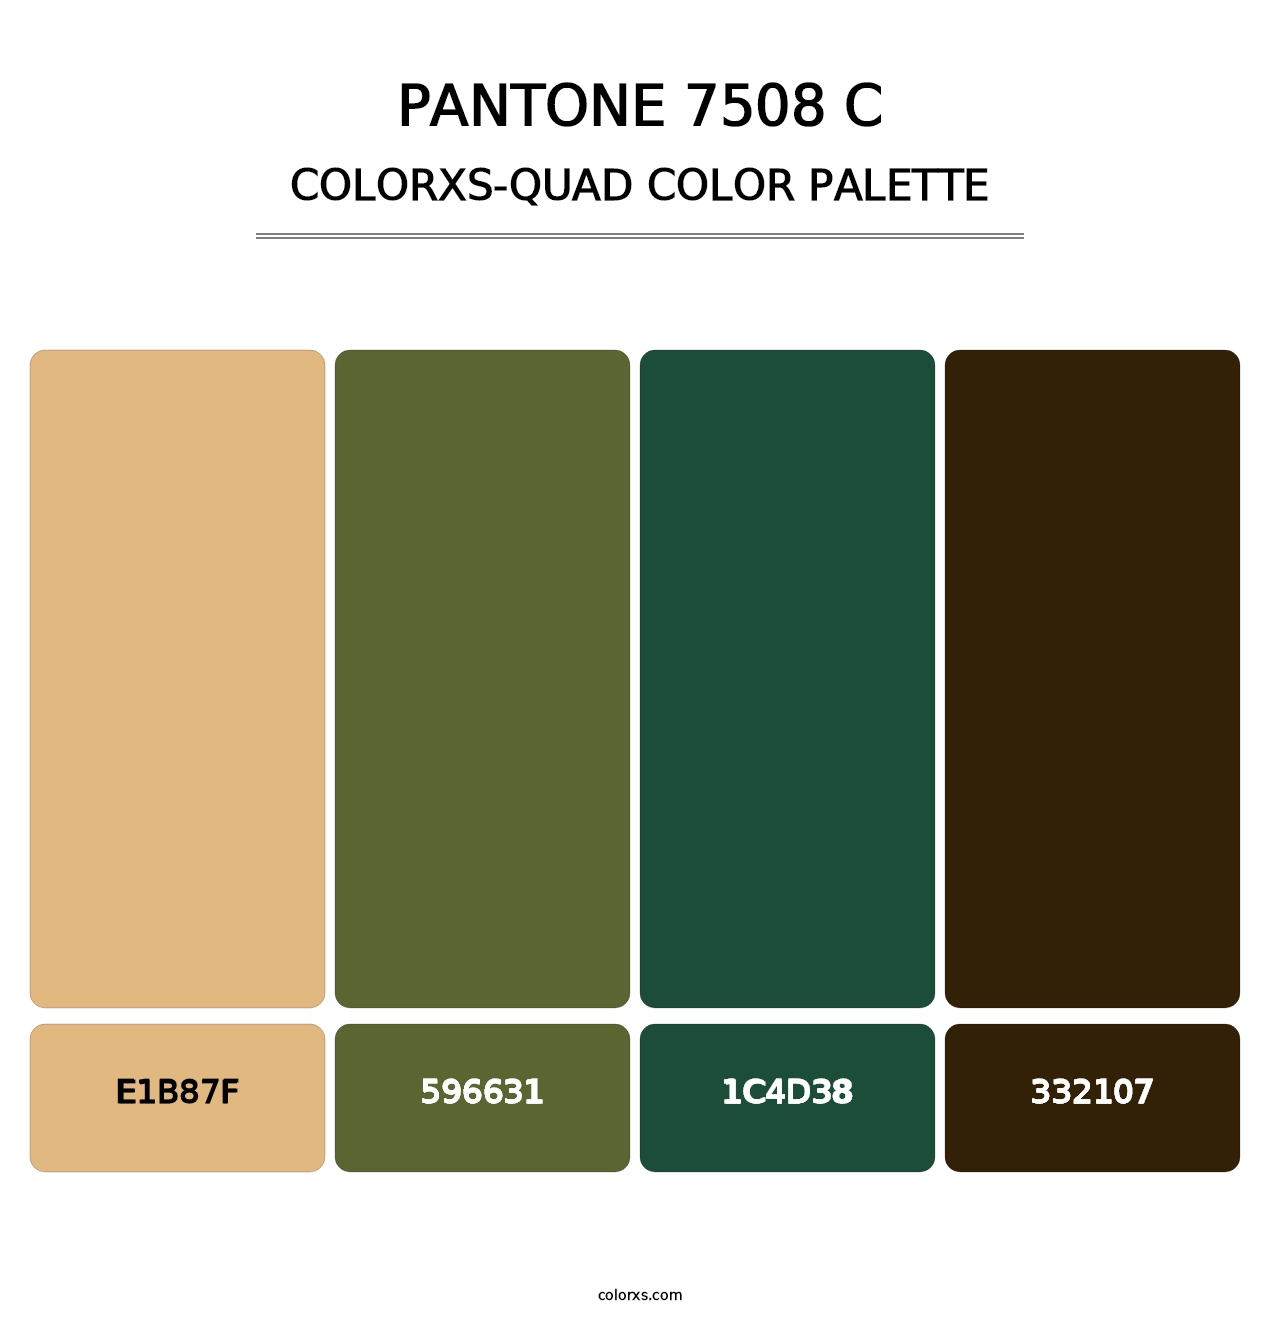 PANTONE 7508 C - Colorxs Quad Palette